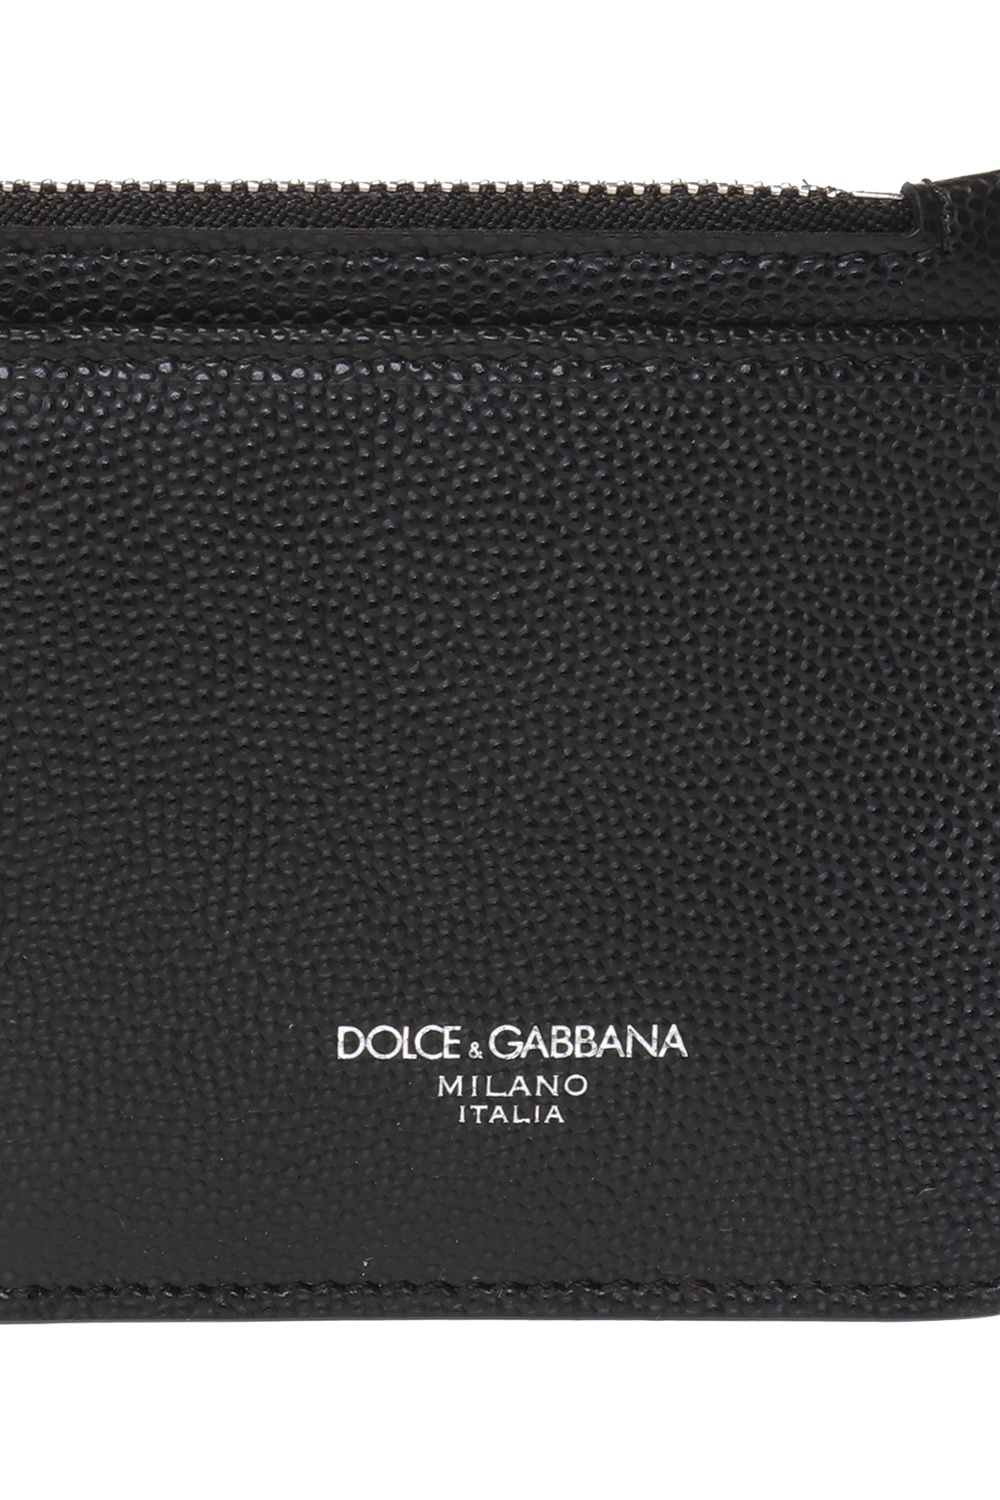 Logo-printed card holder Dolce & Gabbana - Vitkac Canada